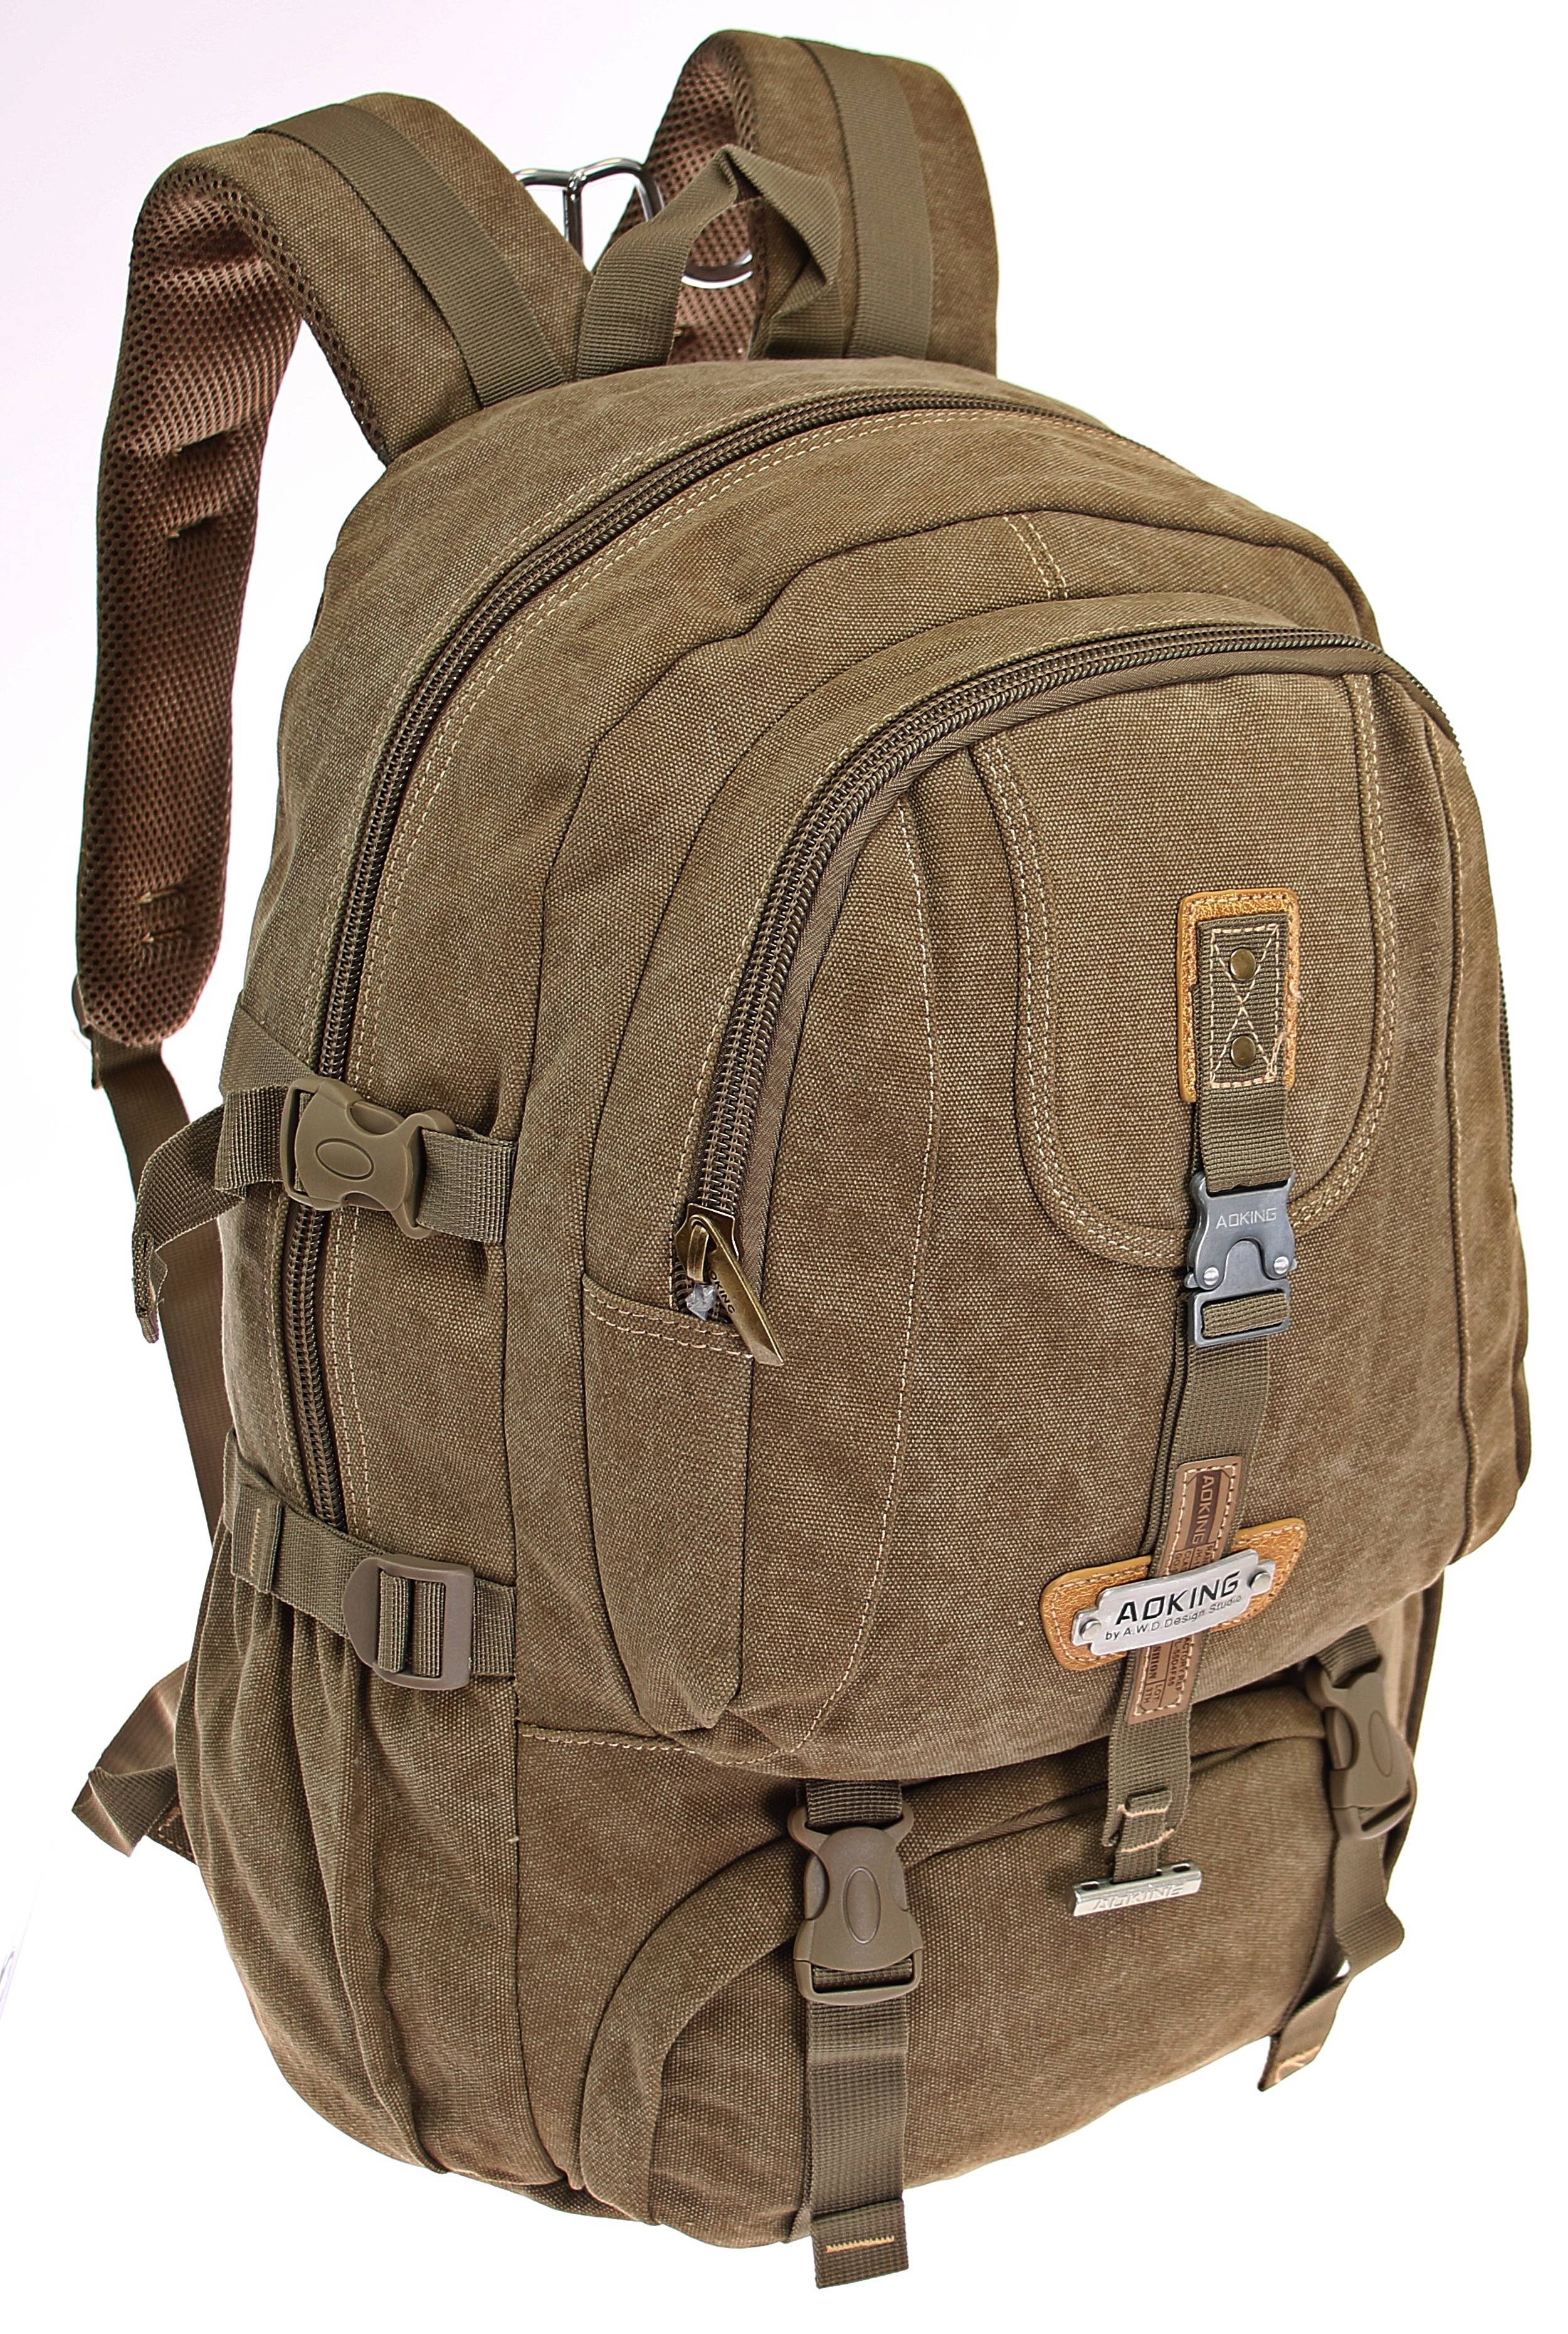 FREIZEIT-RUCKSACK Outdoor Backpack TASCHE REISE SCHULE SPORT Laptop-Rucksack Bag 